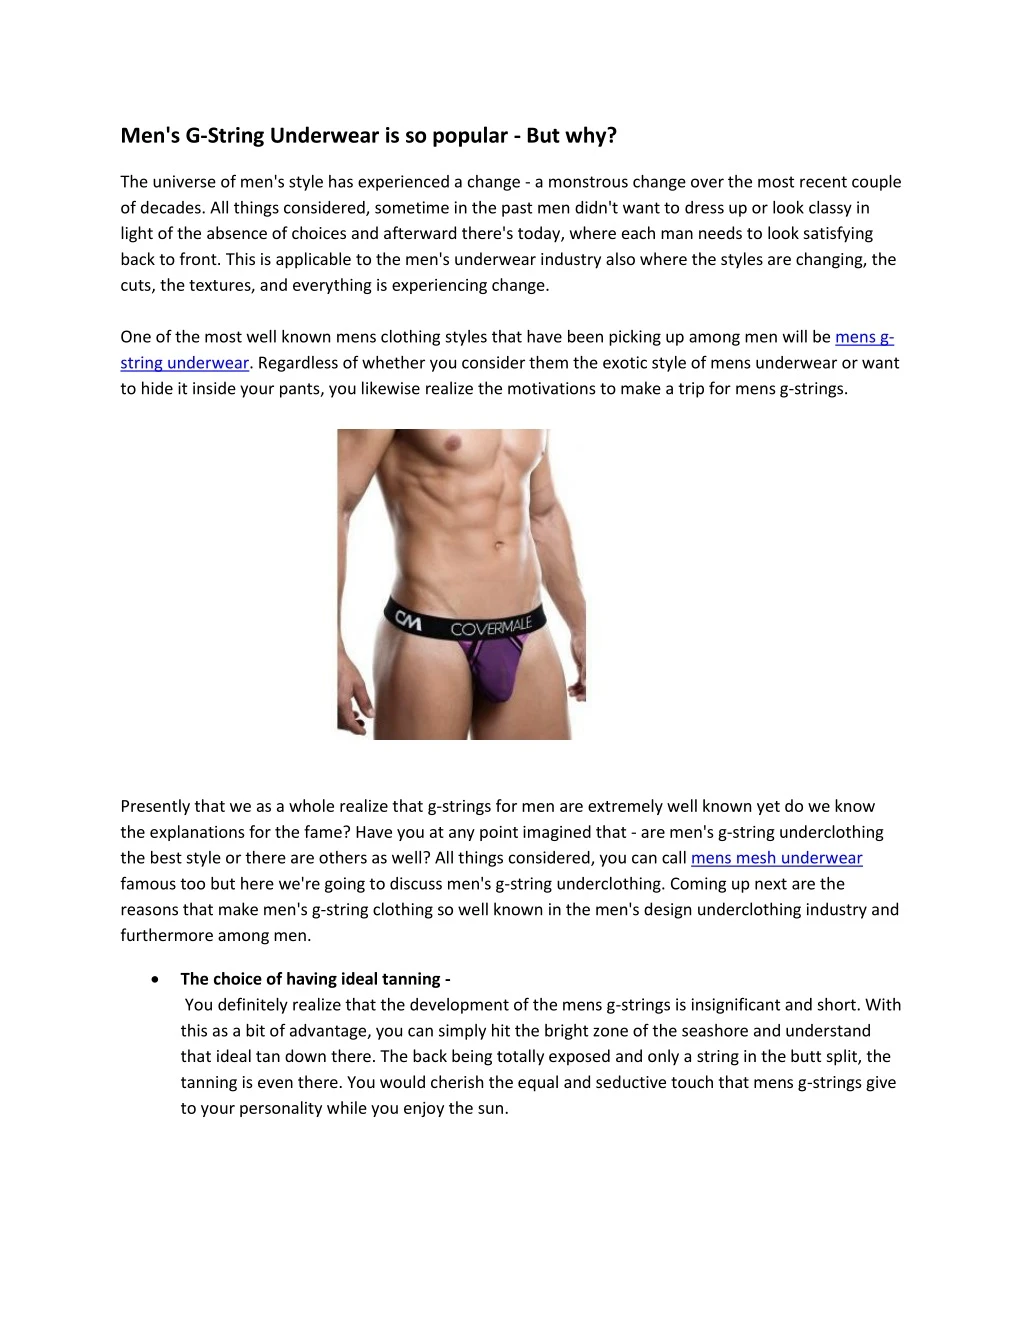 men s g string underwear is so popular but why